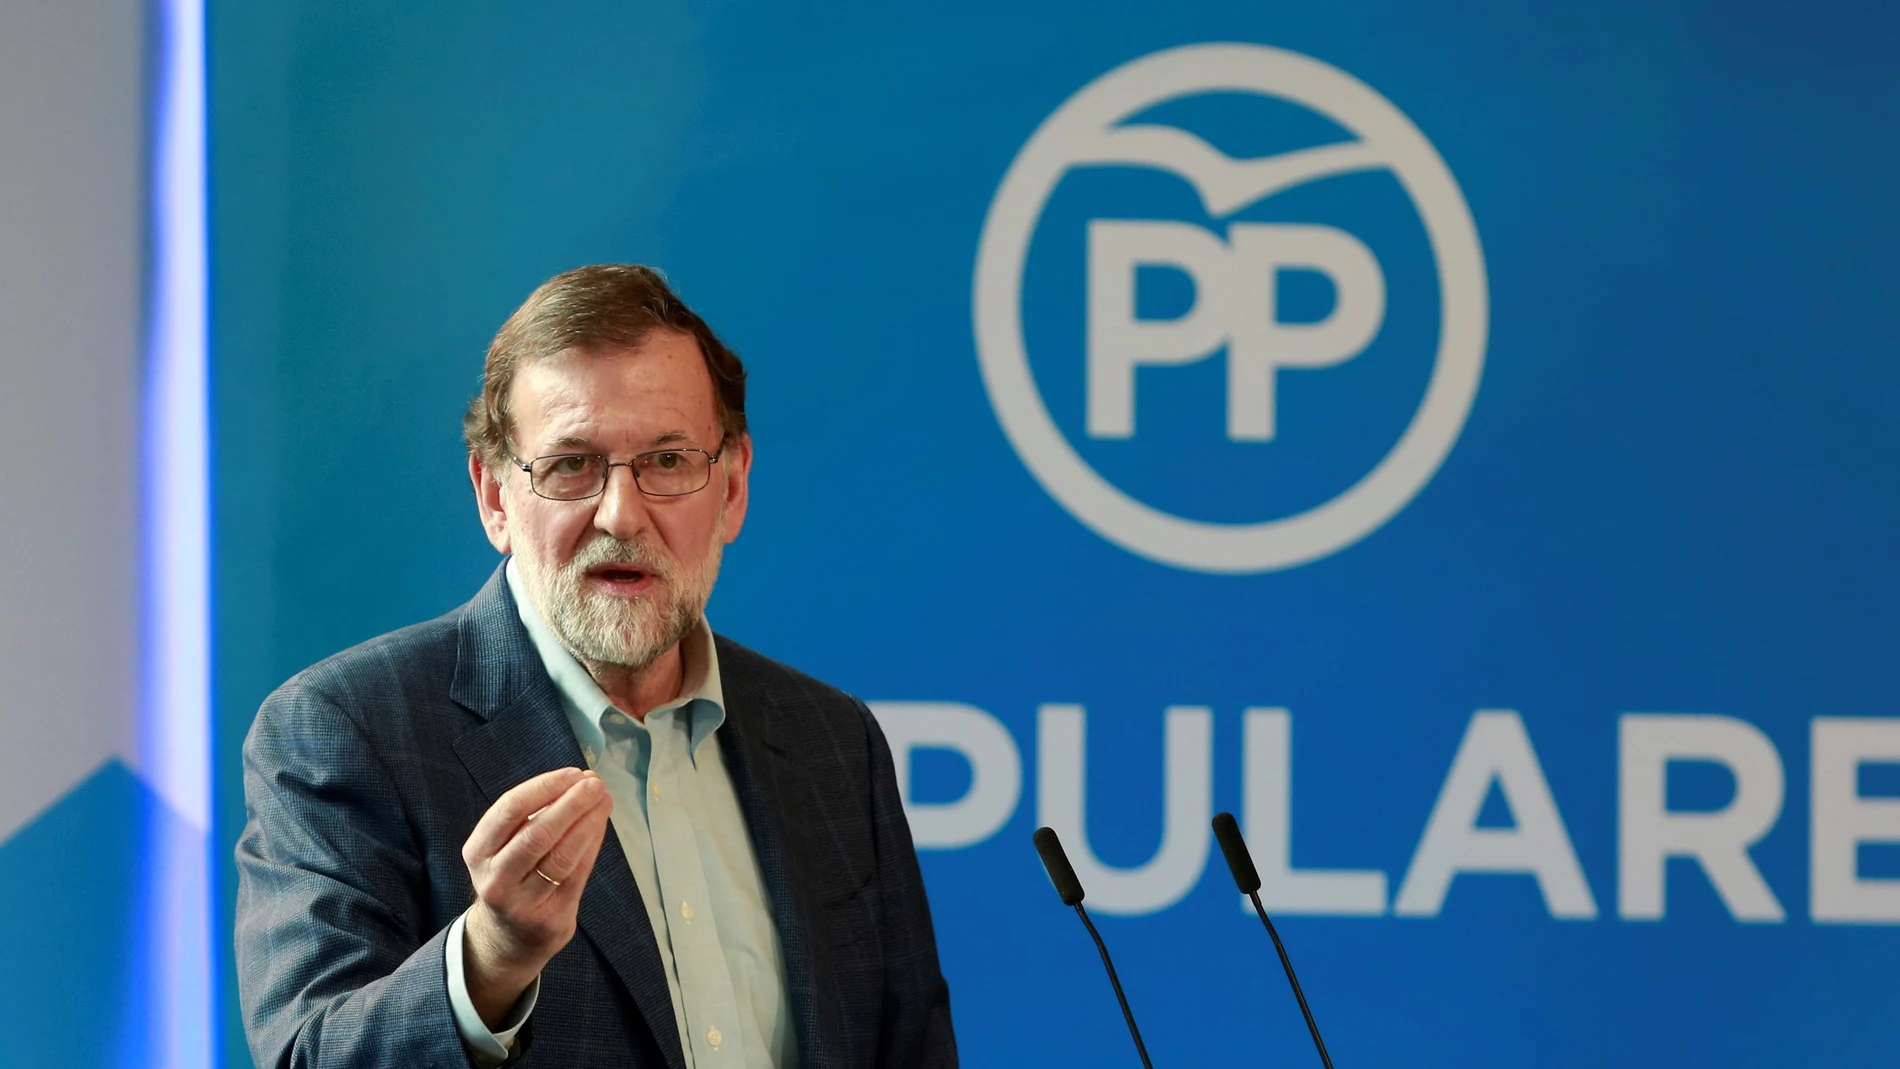 El presidente del Gobierno de España, Mariano Rajoy, durante un acto del PP